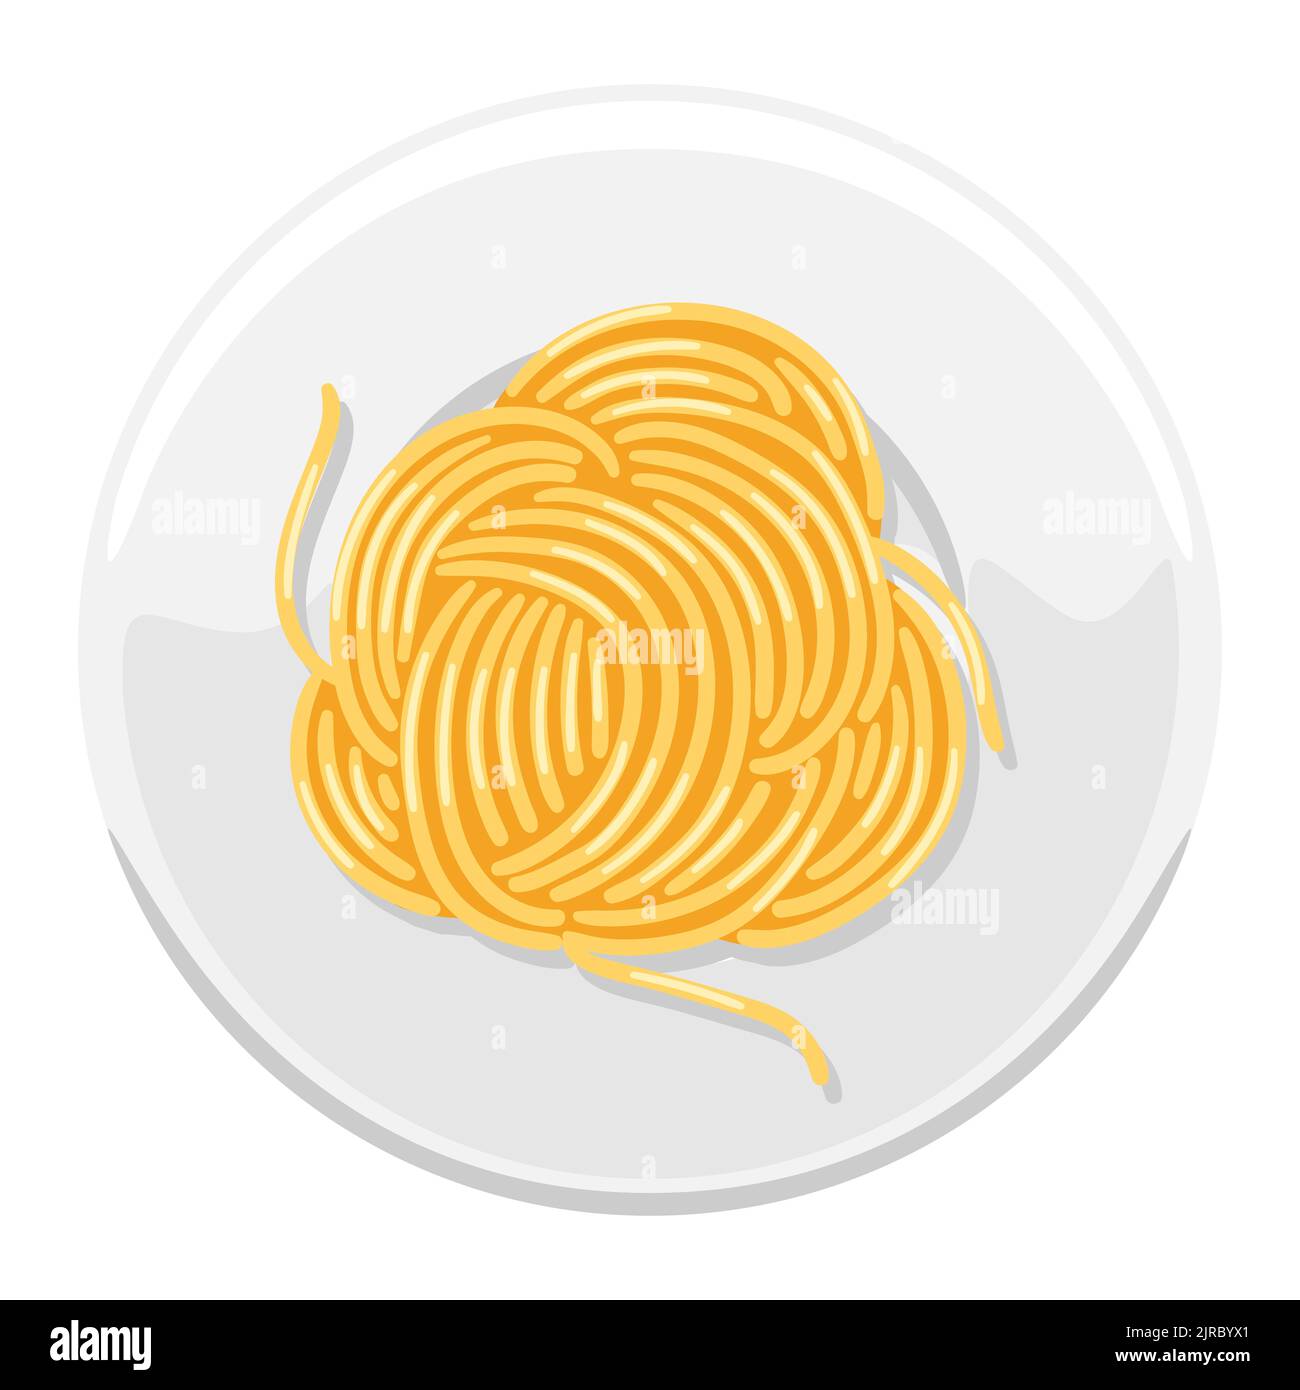 Illustrazione degli spaghetti di pasta italiana sul piatto. Immagine culinaria per menu e ristoranti. Illustrazione Vettoriale